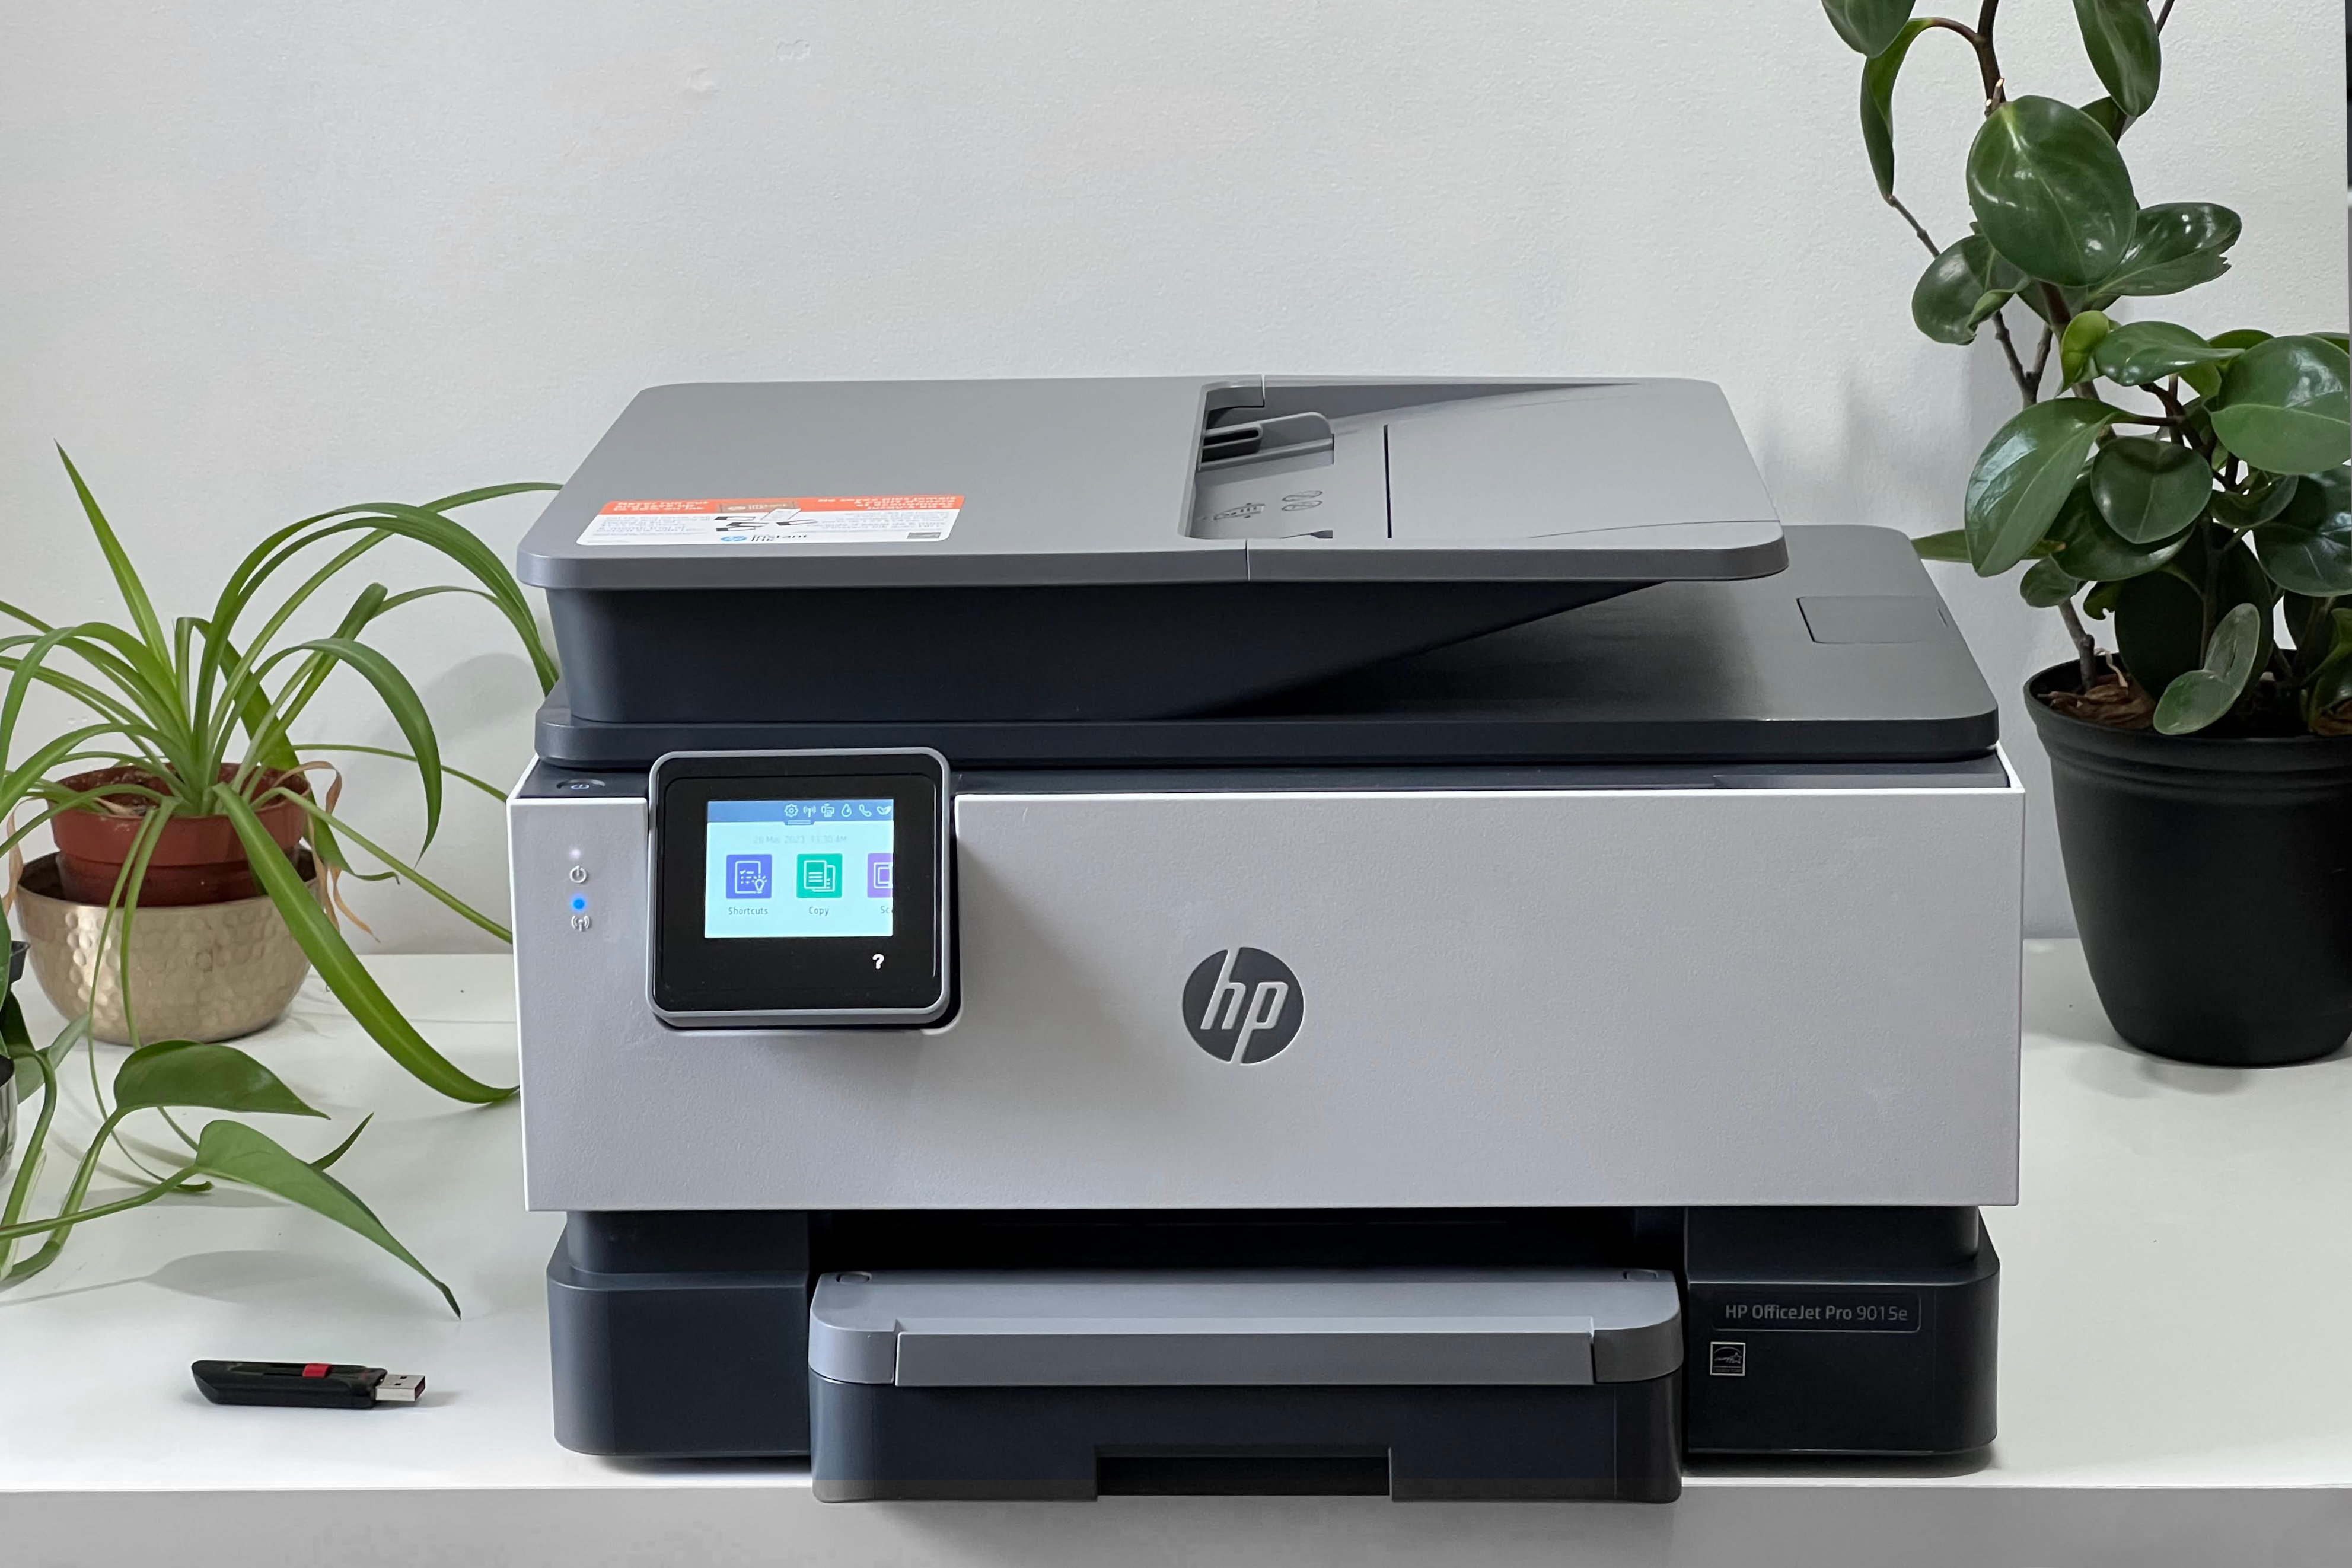 یک چاپگر چندکاره HP OfficeJet Pro 9015e روی یک میز سفید با گیاهان و یک فلش مموری در کنار آن قرار دارد.